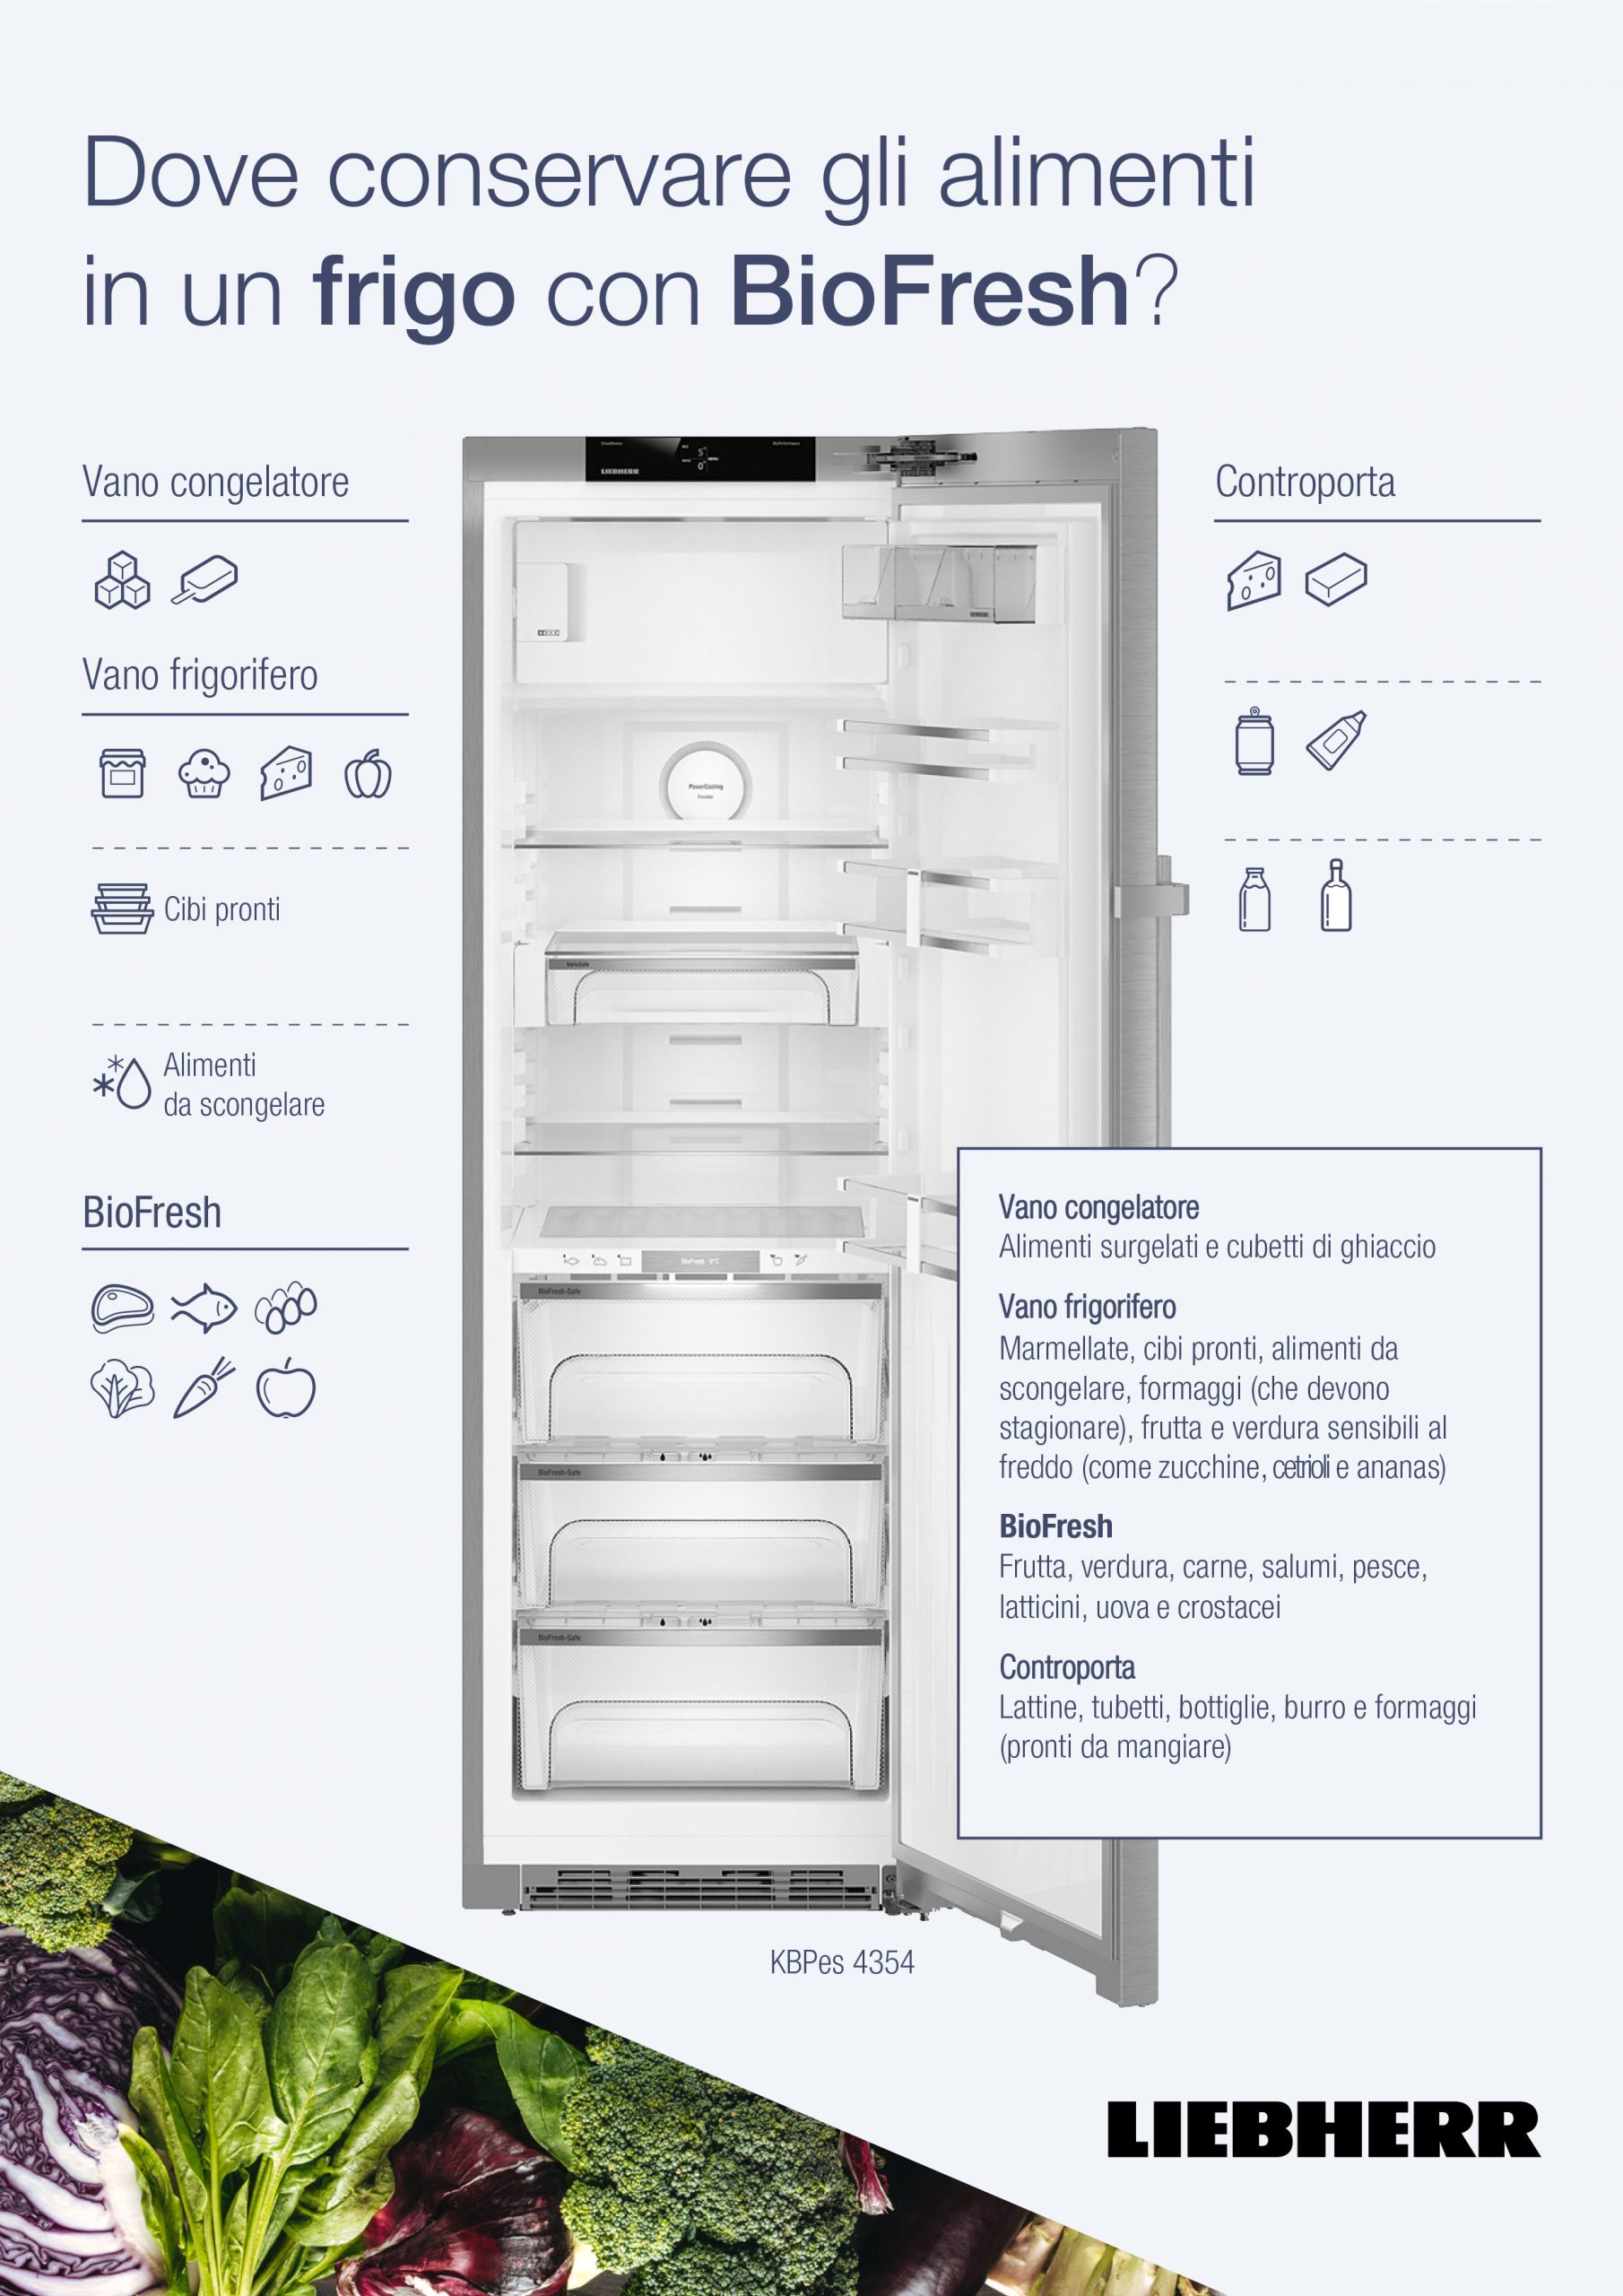 Come conservare gli alimenti in frigorifero in modo corretto - Non Sprecare